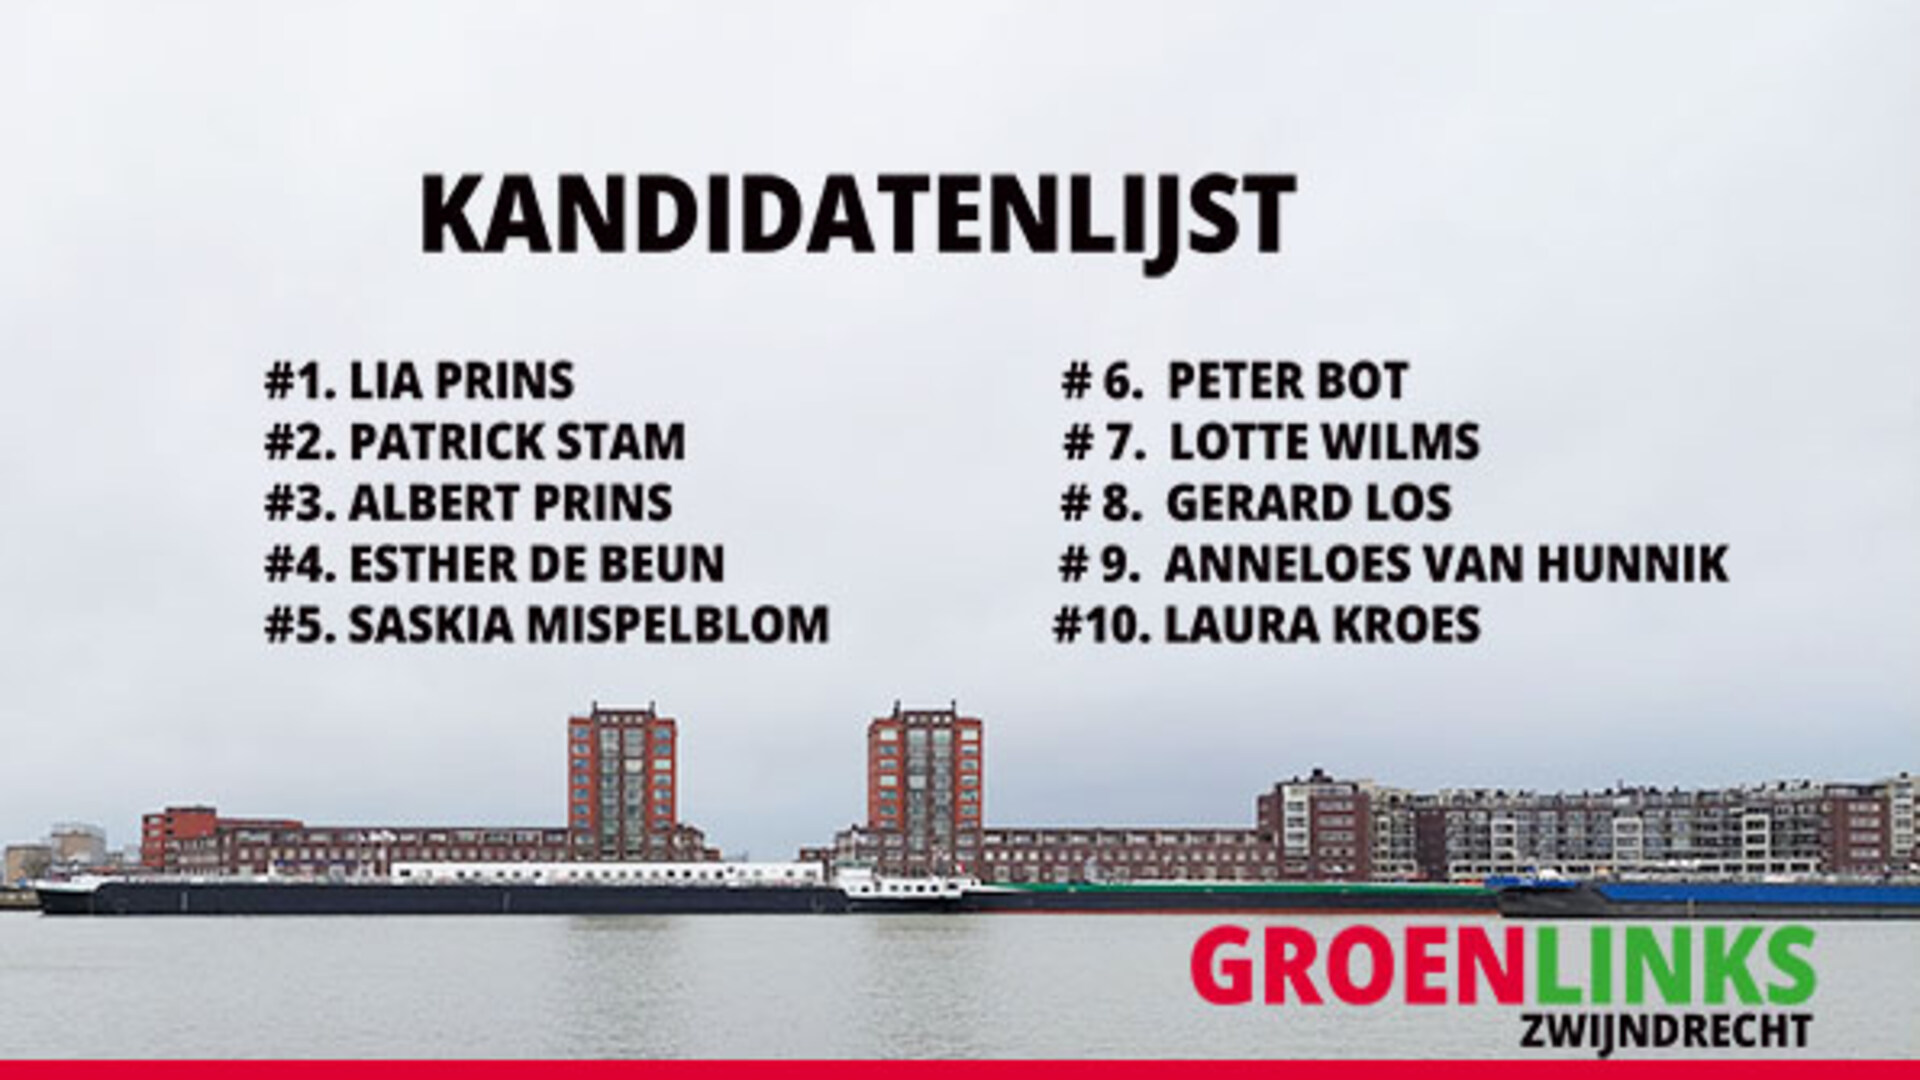 kandidatenlijst voor GroenLinks Zwijndrecht